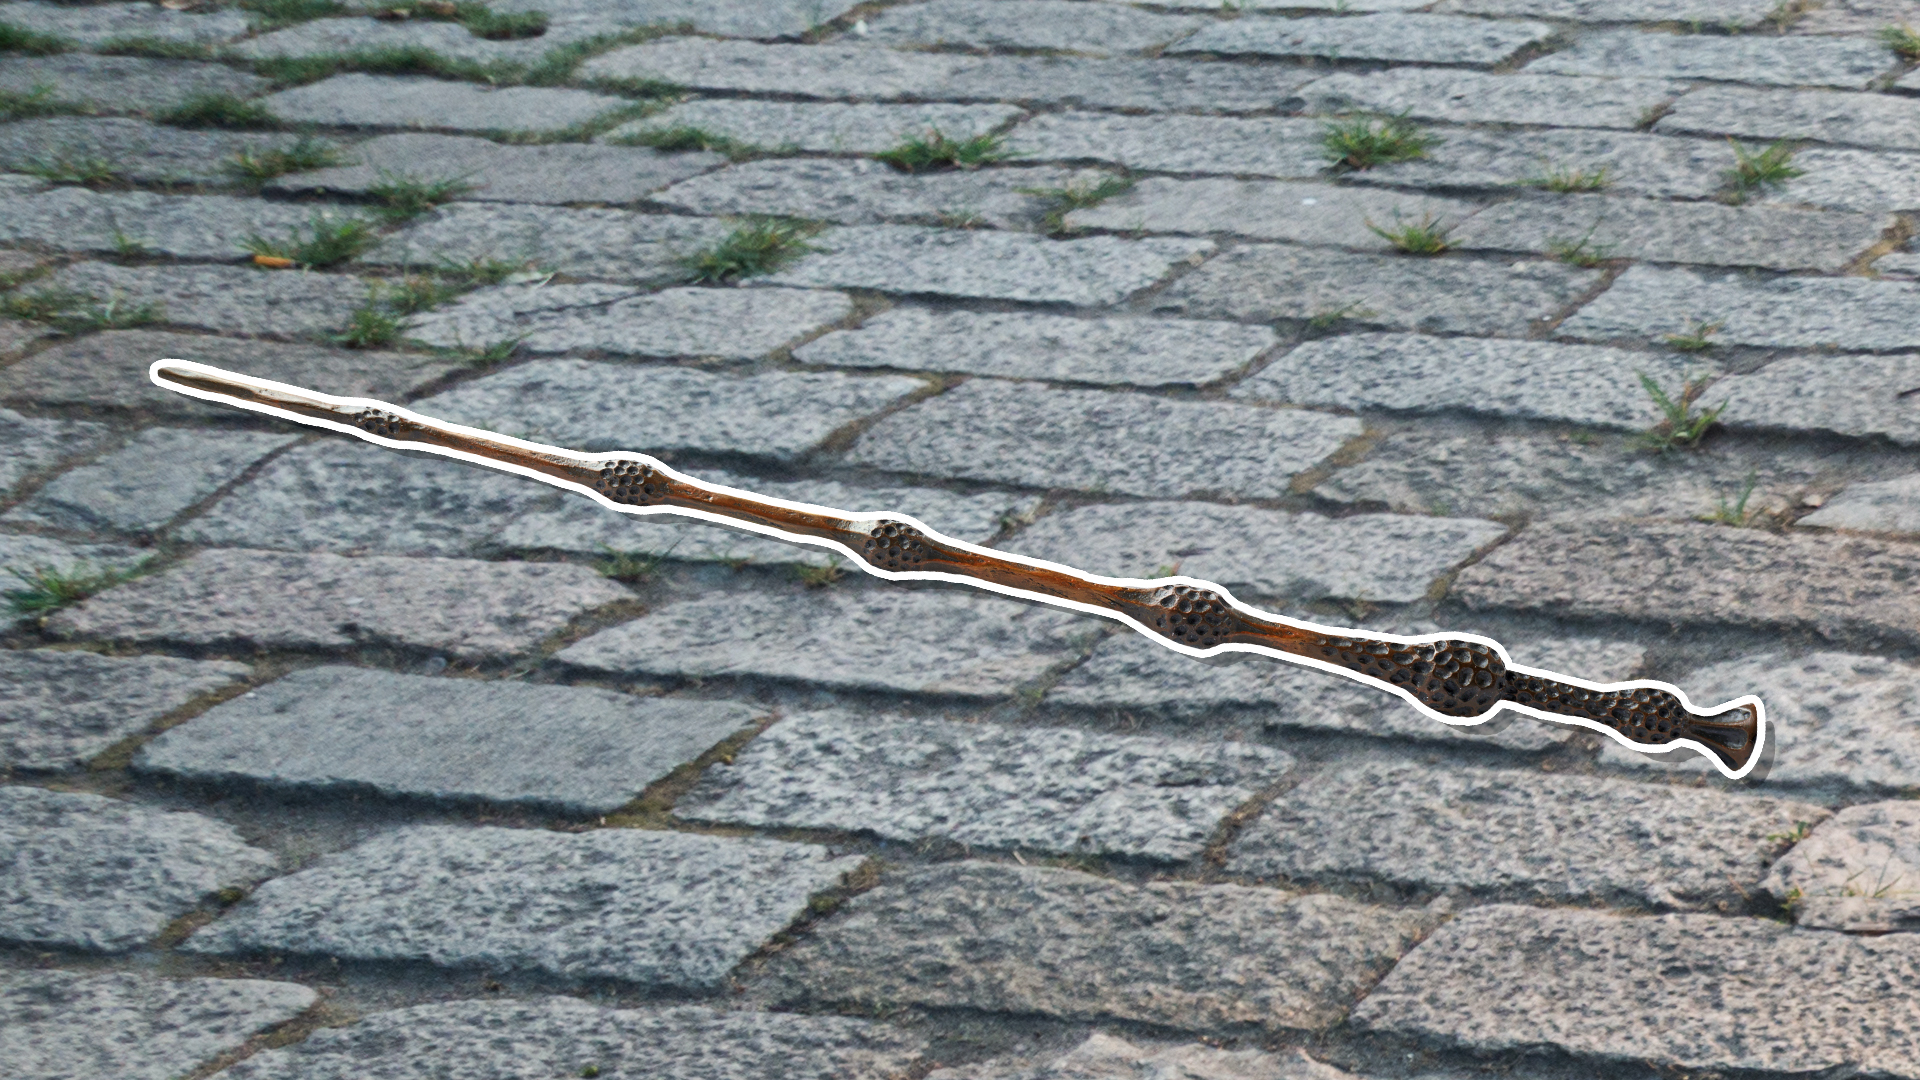 An Elder wand on a cobbled street